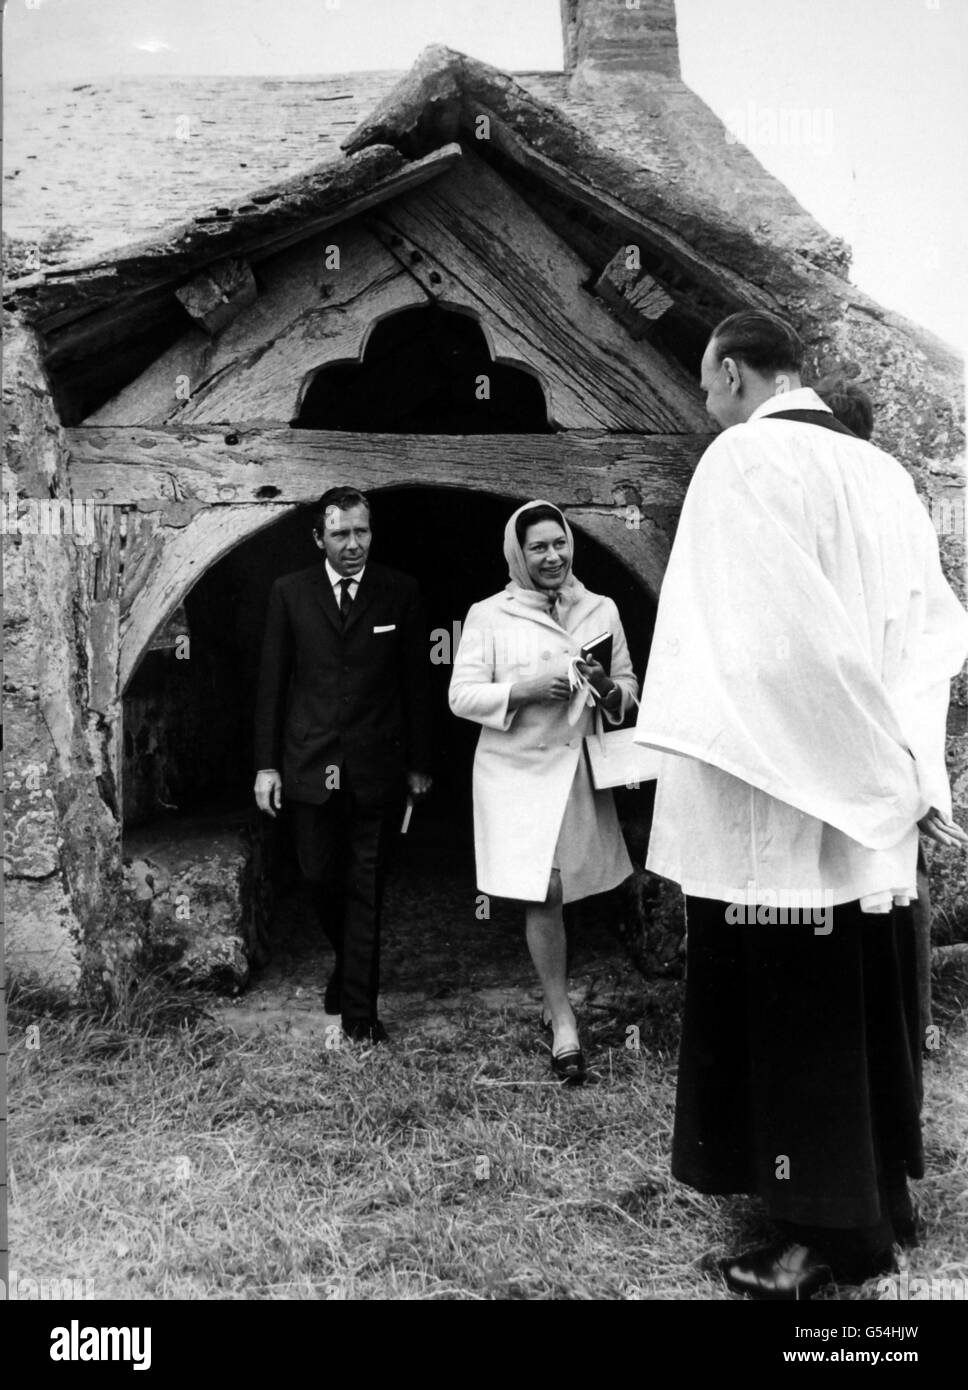 La princesse Margaret et Lord Snowdon disent Au revoir au révérend Robert E. Williams, le vicaire, alors qu'ils quittent l'église paroissiale Llanfaglan du XIIIe siècle, près de Caernarfon, au pays de Galles. Banque D'Images